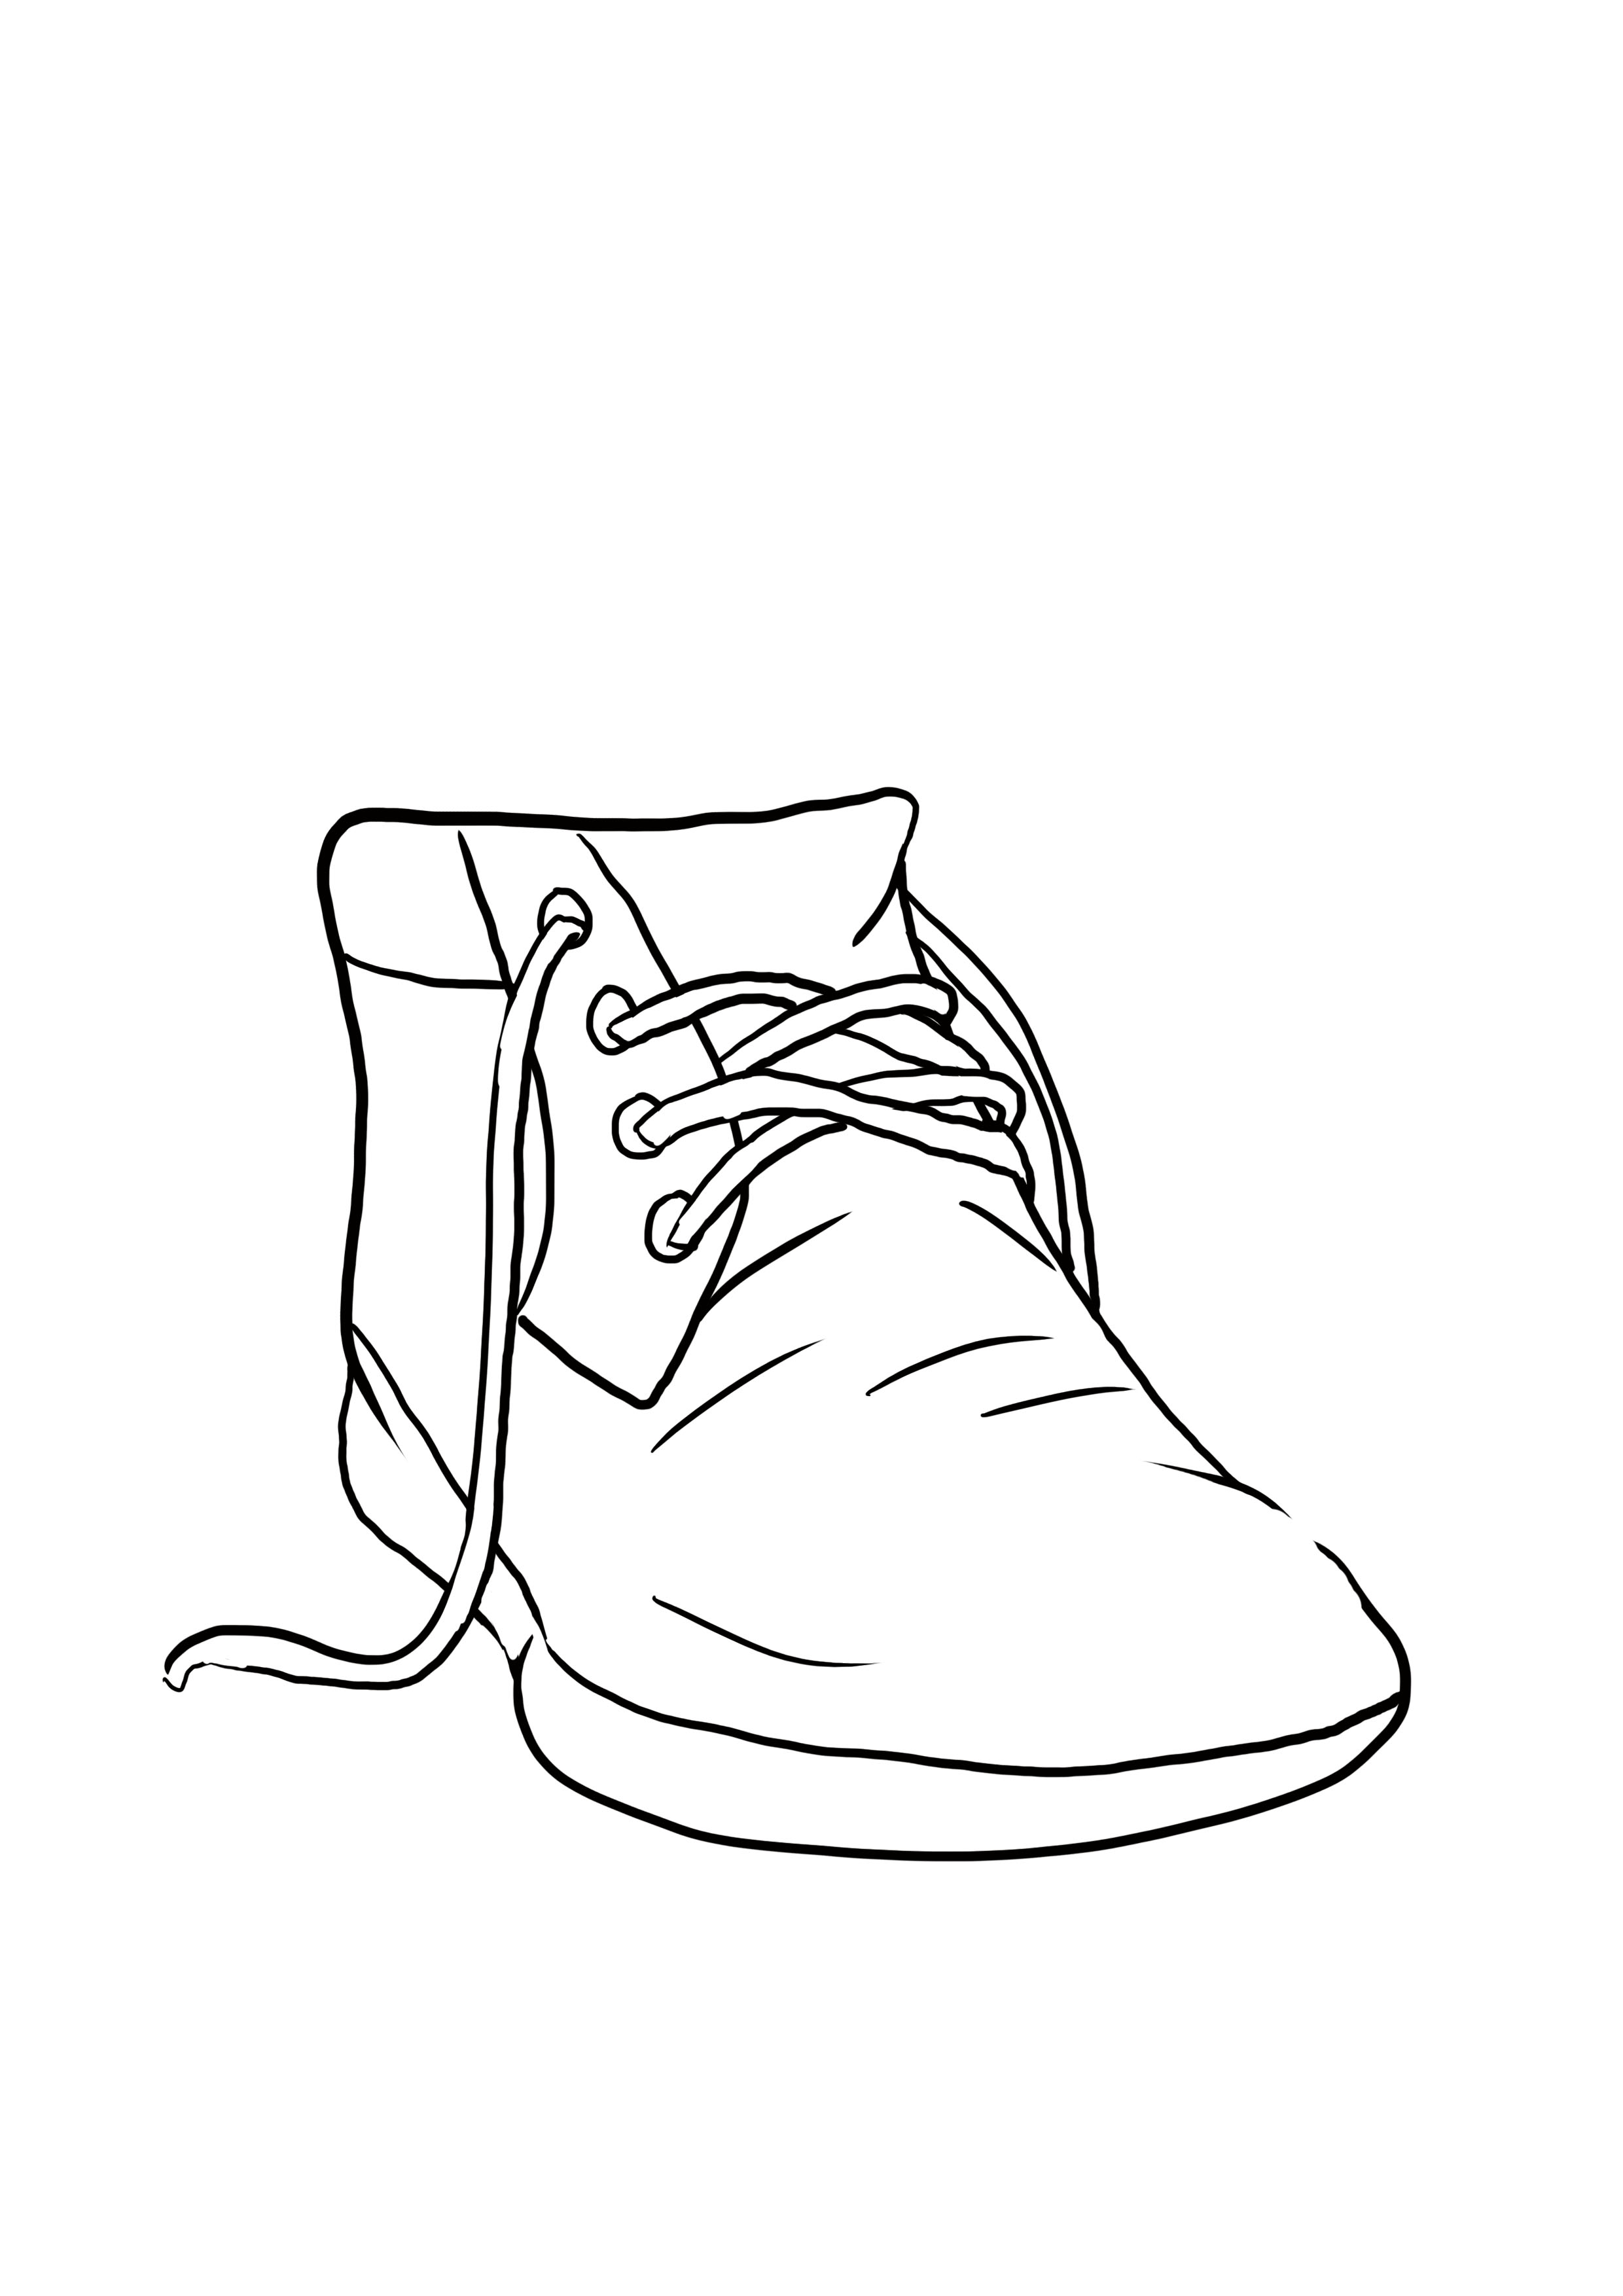 dessin difficile : les détails de la chaussure